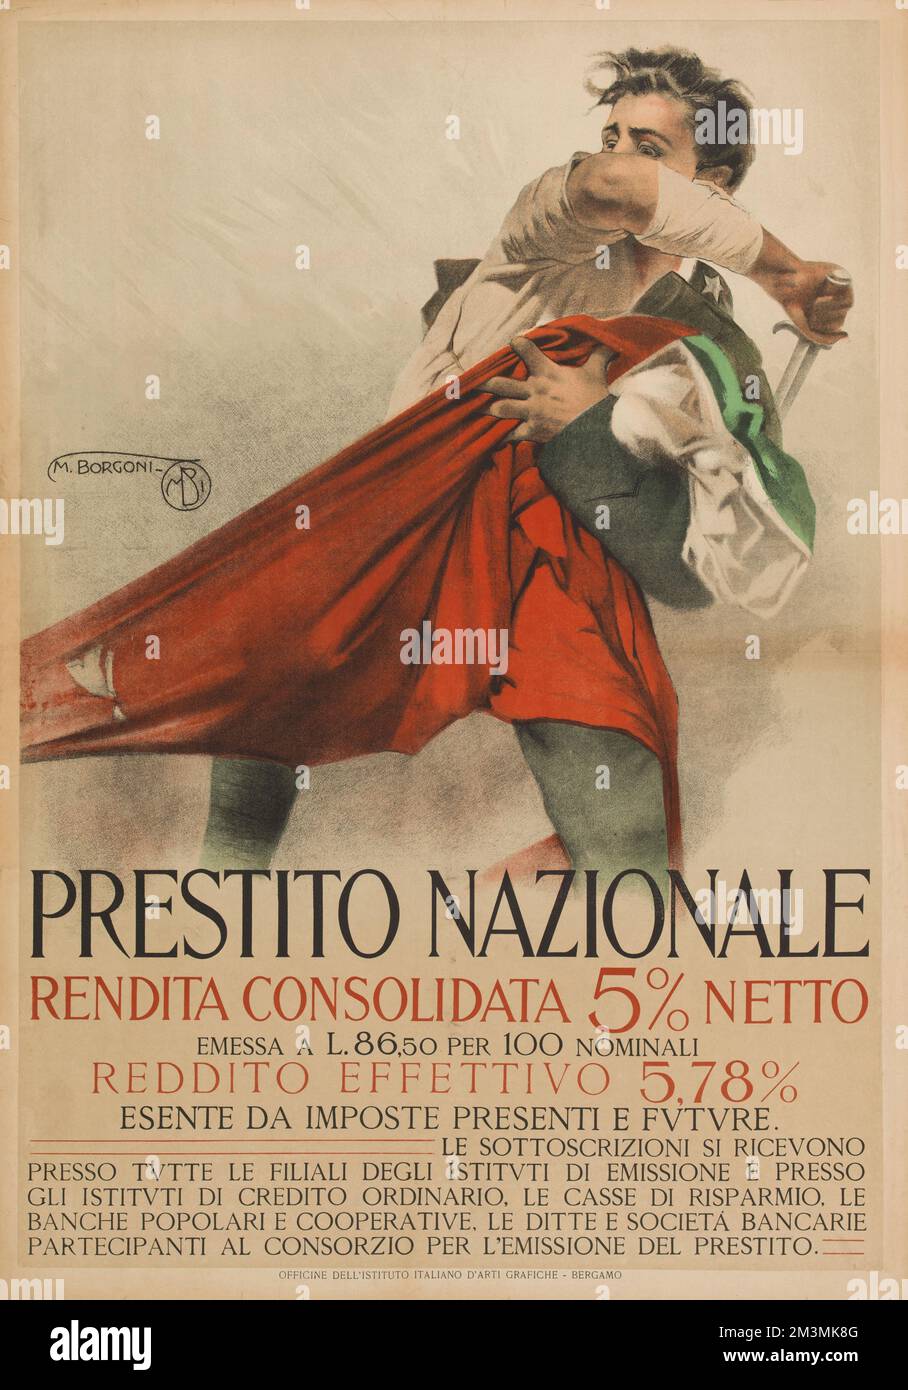 Prestito nazionale rendita consolidata 5% netto poster by Mario Borgoni, 1917-1918 Stock Photo